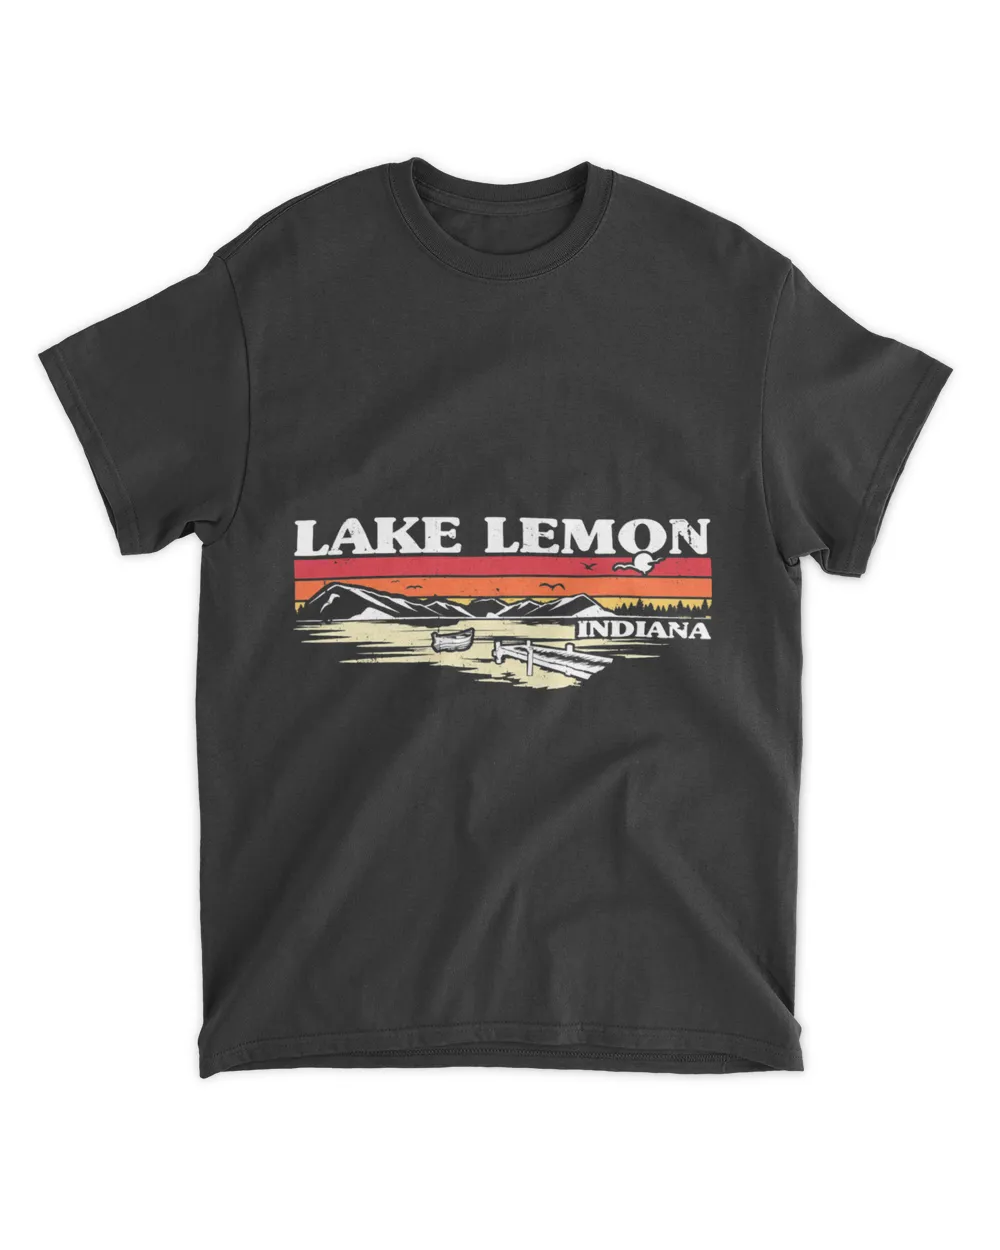 Camping Camp Fishing Boating Camping Lake Vacation Lake Lemon 1 Camper